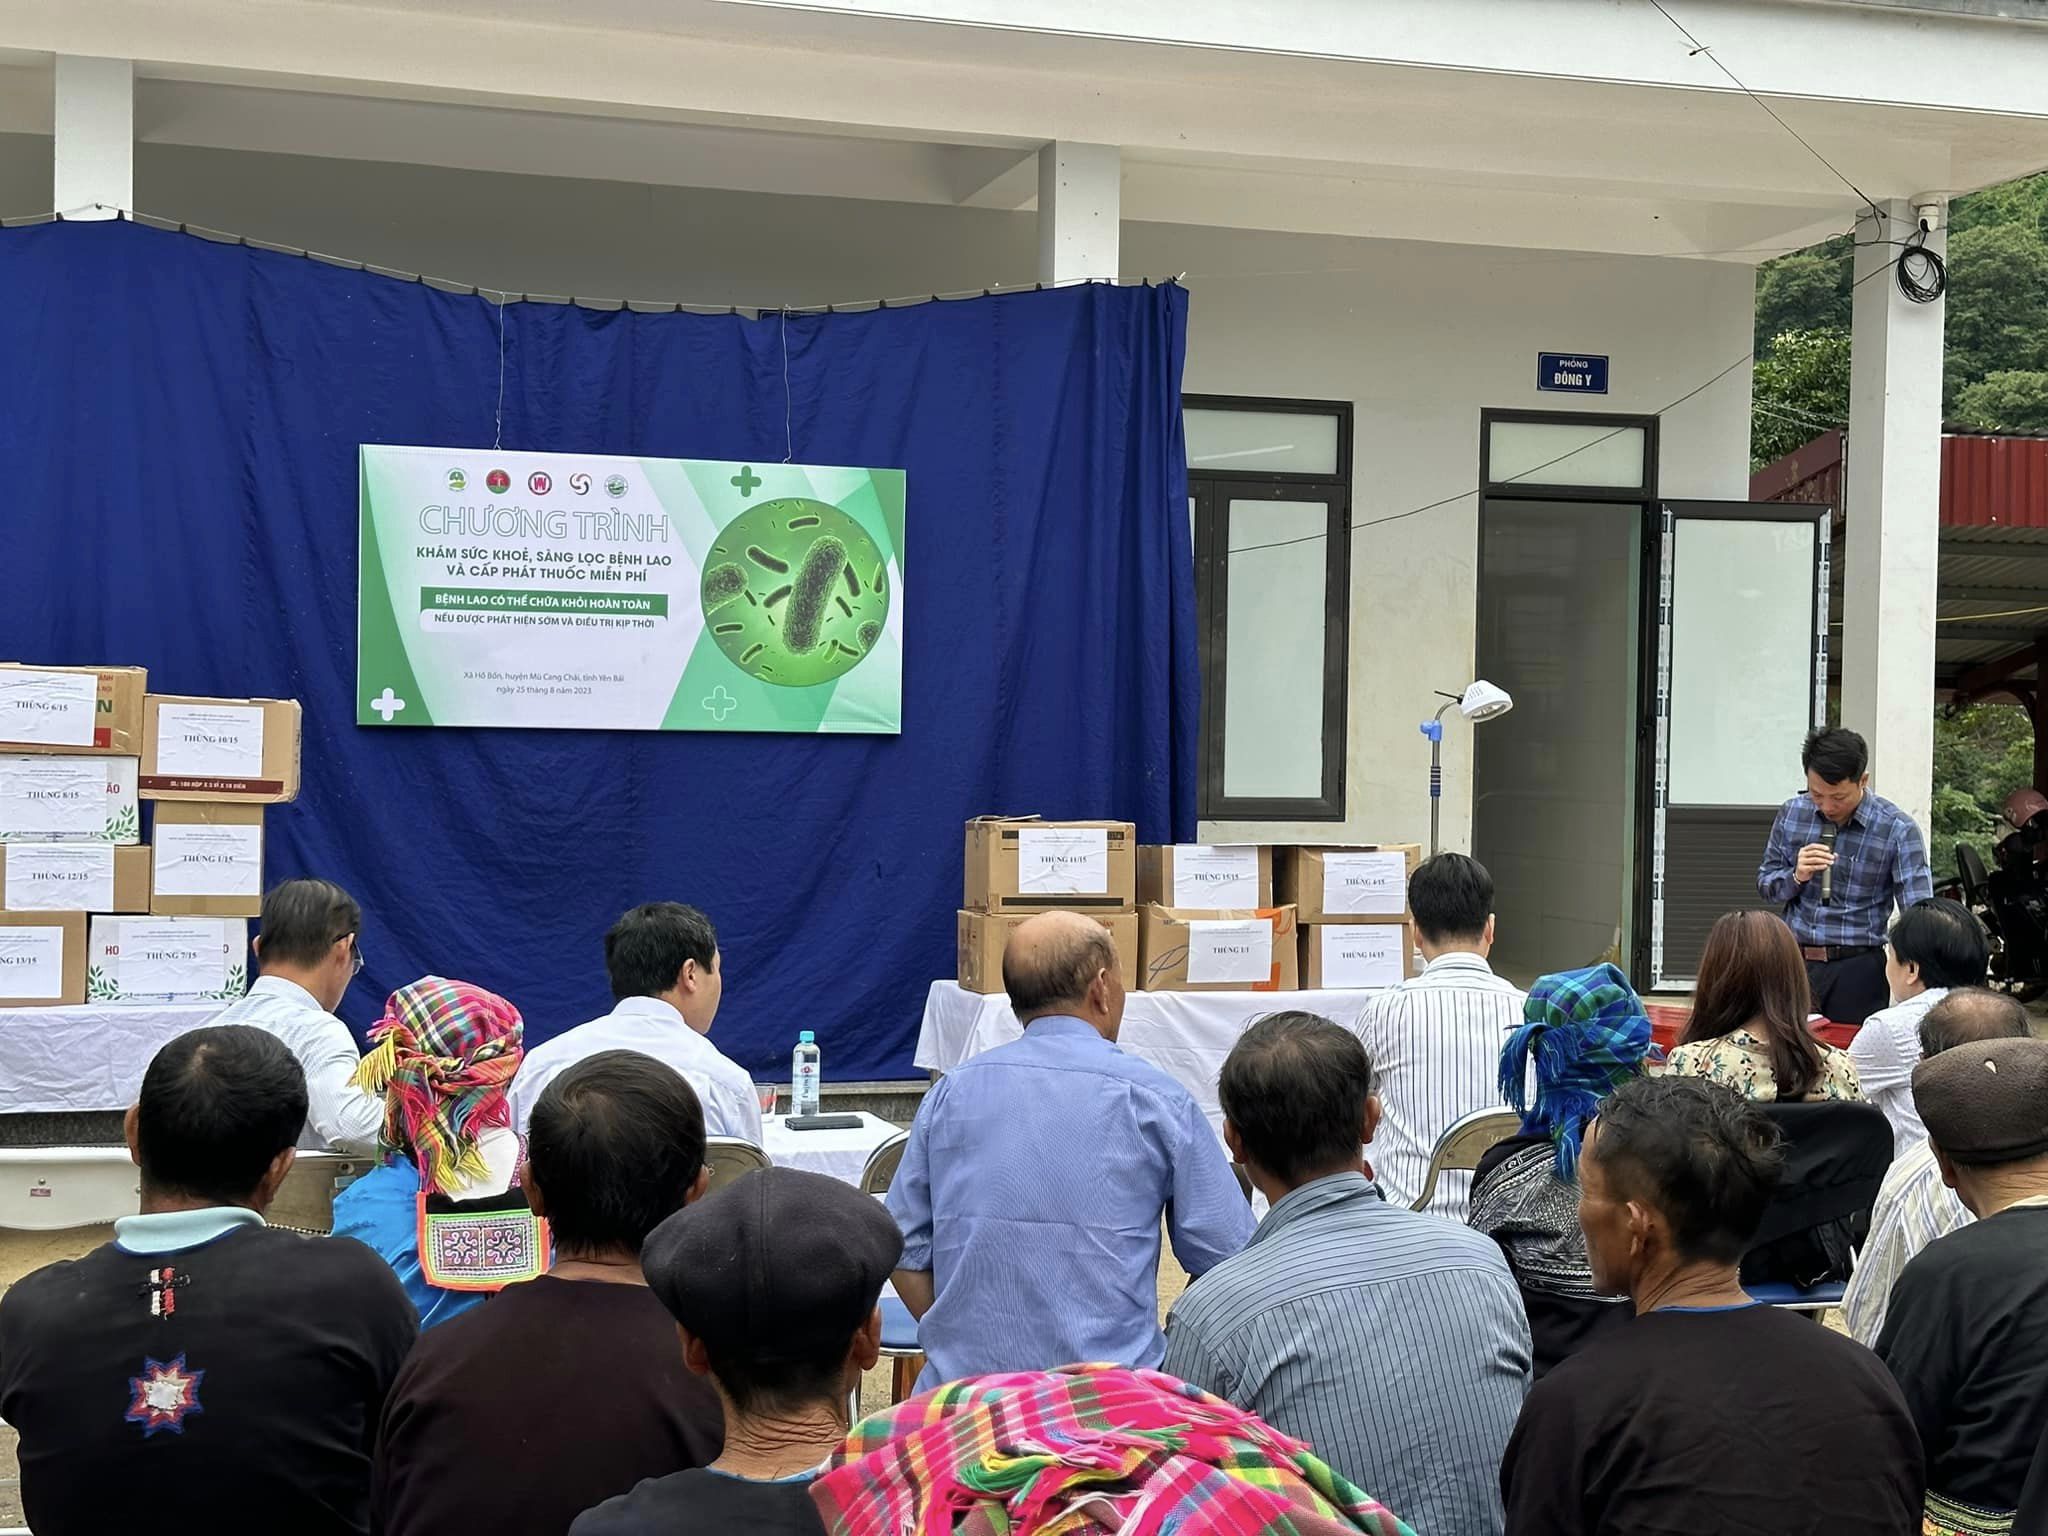 Khám sàng lọc, cấp thuốc miễn phí cho gần 200 người dân vùng lũ quét ở Yên Bái